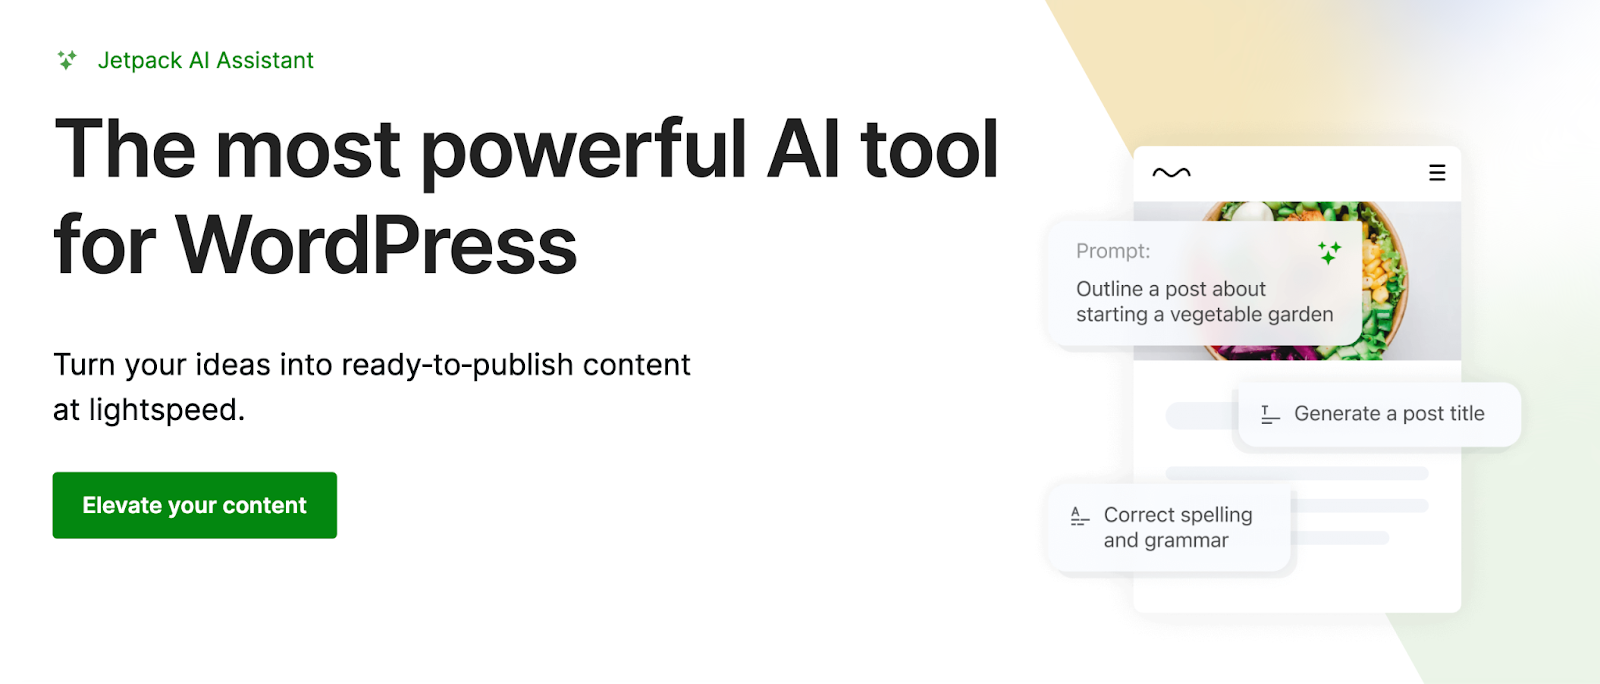 Asistentul Jetpack AI vă permite să treceți de la o idee la conținut de înaltă calitate în câteva minute, făcându-l unul dintre cele mai puternice și utile pluginuri AI pentru WordPress.